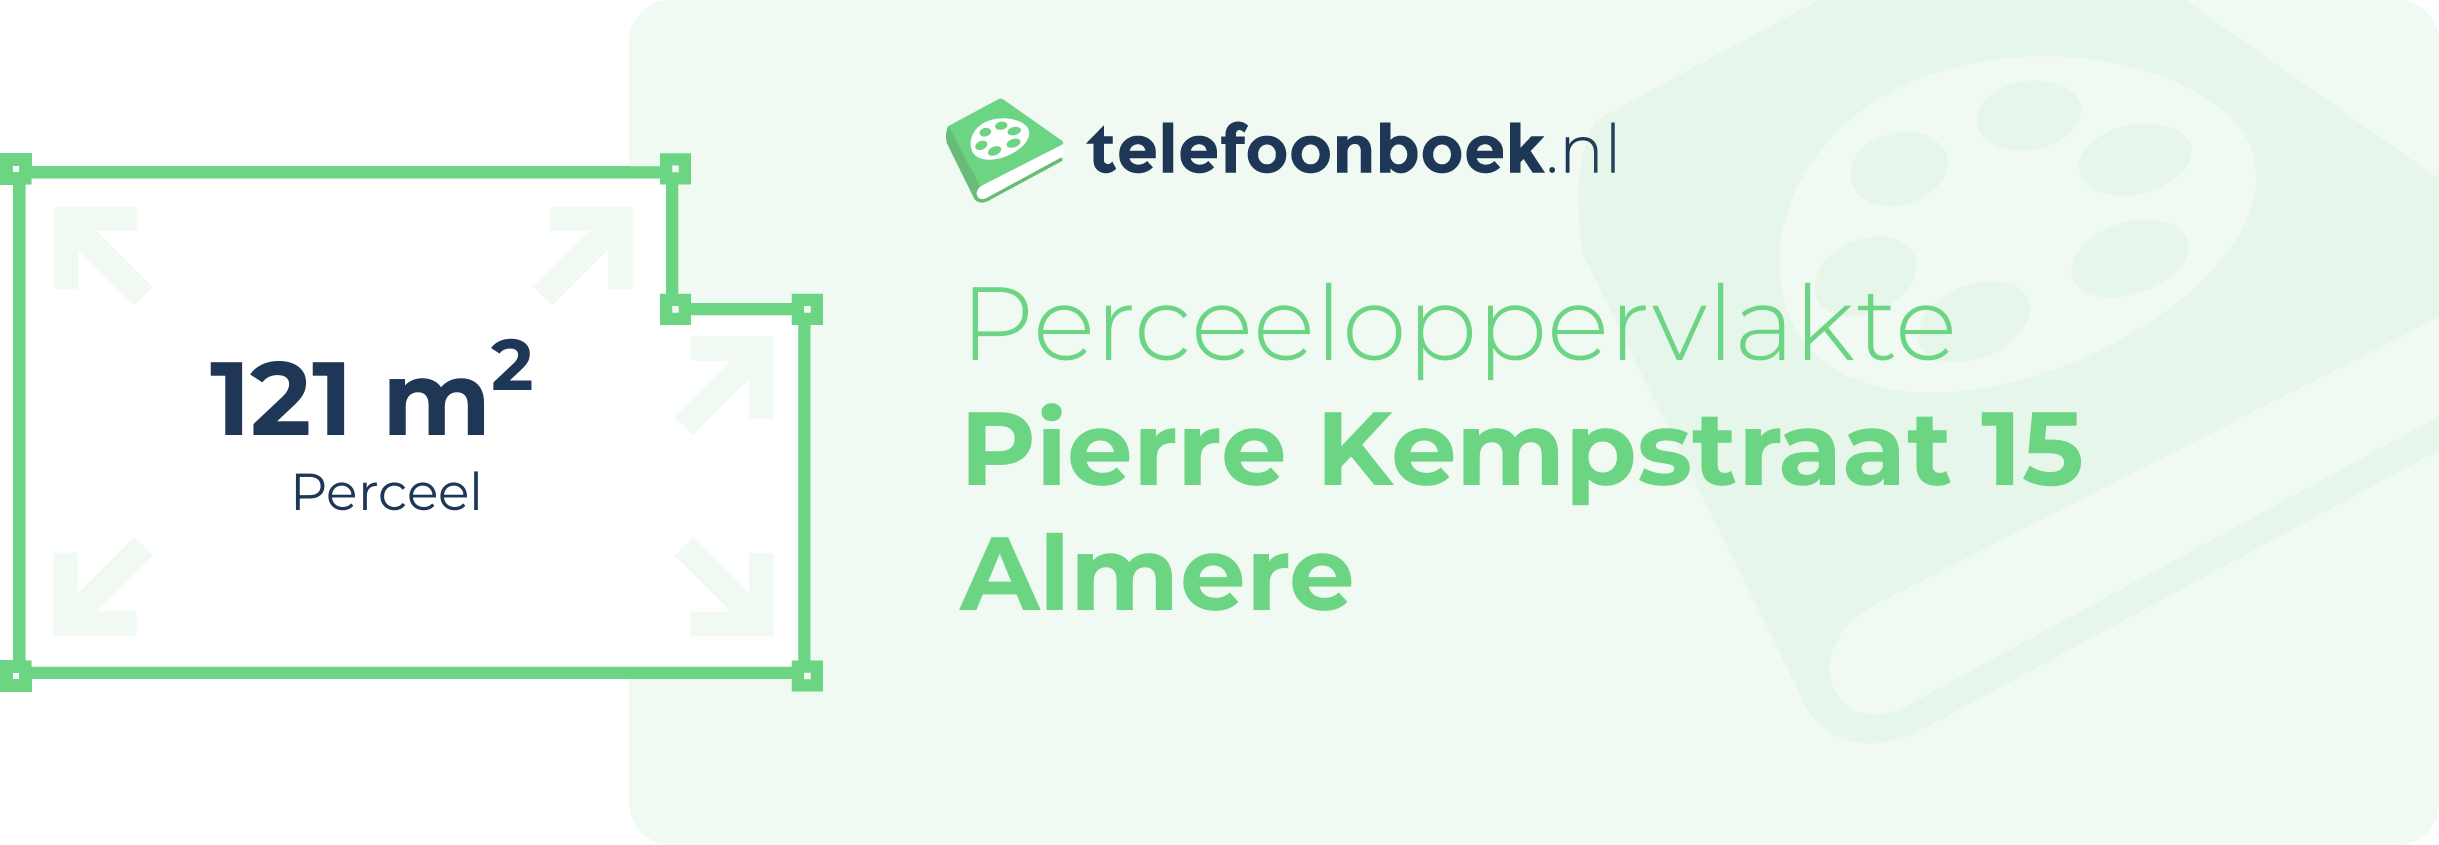 Perceeloppervlakte Pierre Kempstraat 15 Almere